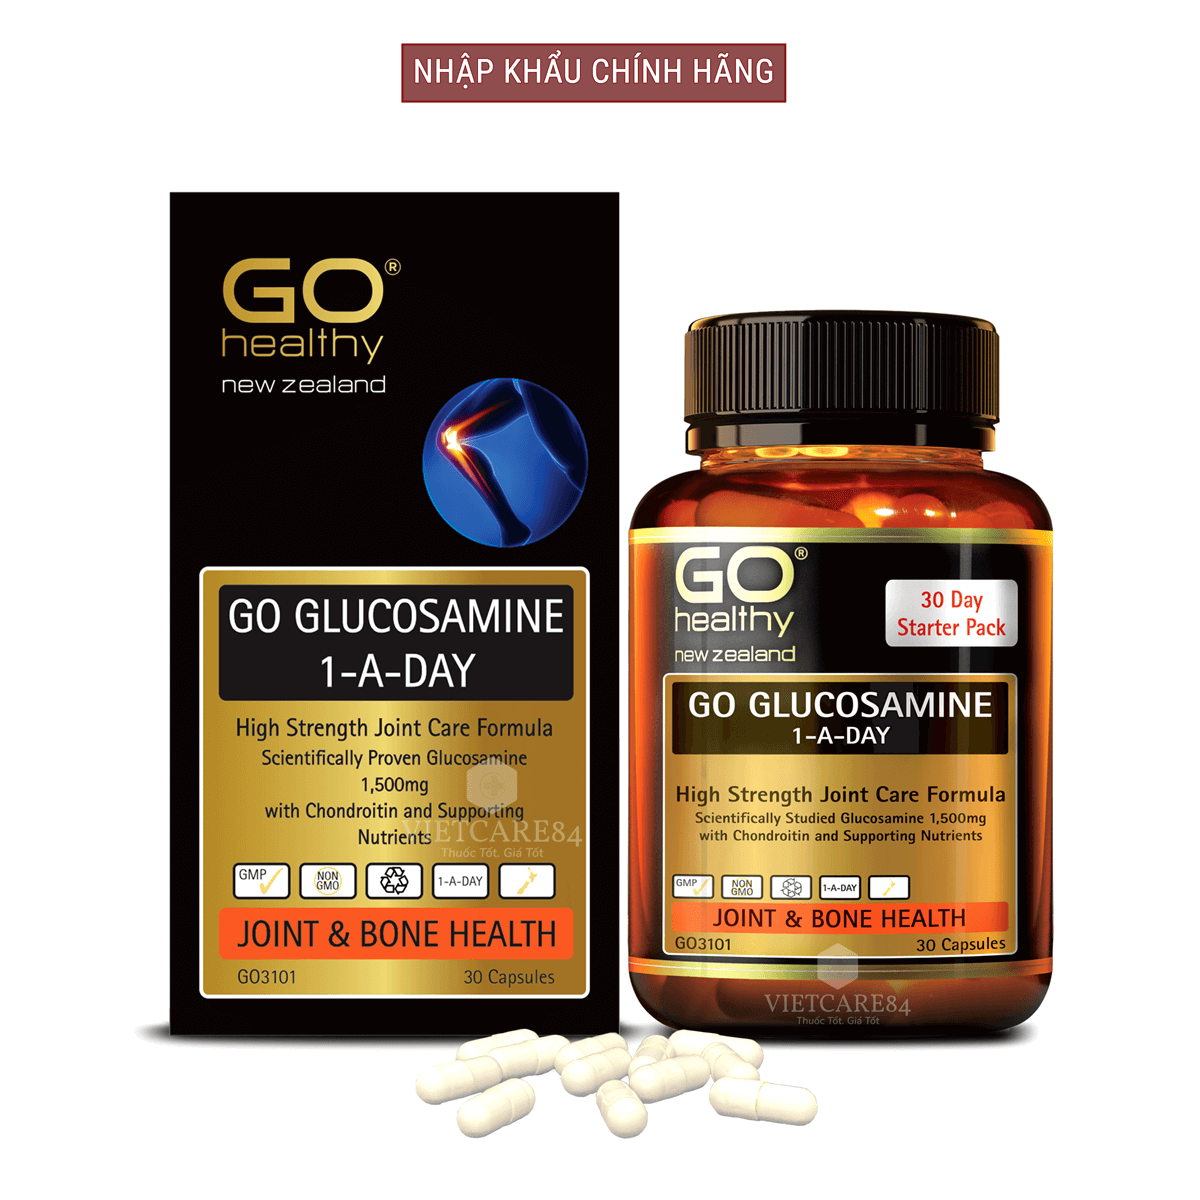 Bộ sản phẩm 2 hộp viên uống glucosamine nhập khẩu chính hãng New Zealand GO GLUCOSAMINE 1-A-DAY 1500mg (30 viên và 60 viên) giúp tăng dịch khớp, giảm thoái hóa khớp, khô khớp, cứng khớp;nuôi dưỡng xương sụn khớp khỏe mạnh